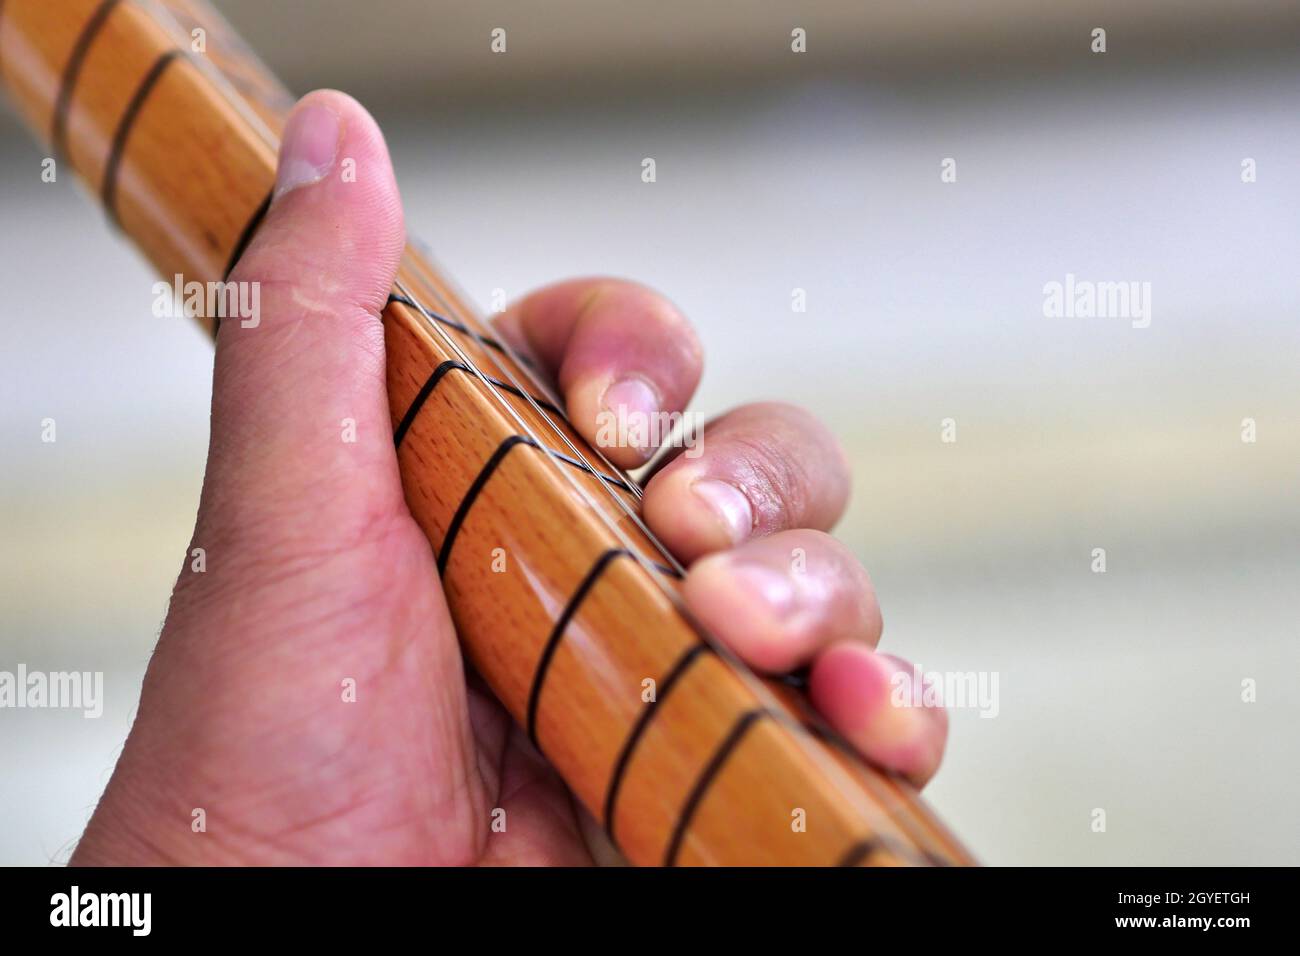 Saz-baglama a collo lungo da strumenti musicali turchi, strumenti musicali turchi, primo piano saz, Foto Stock